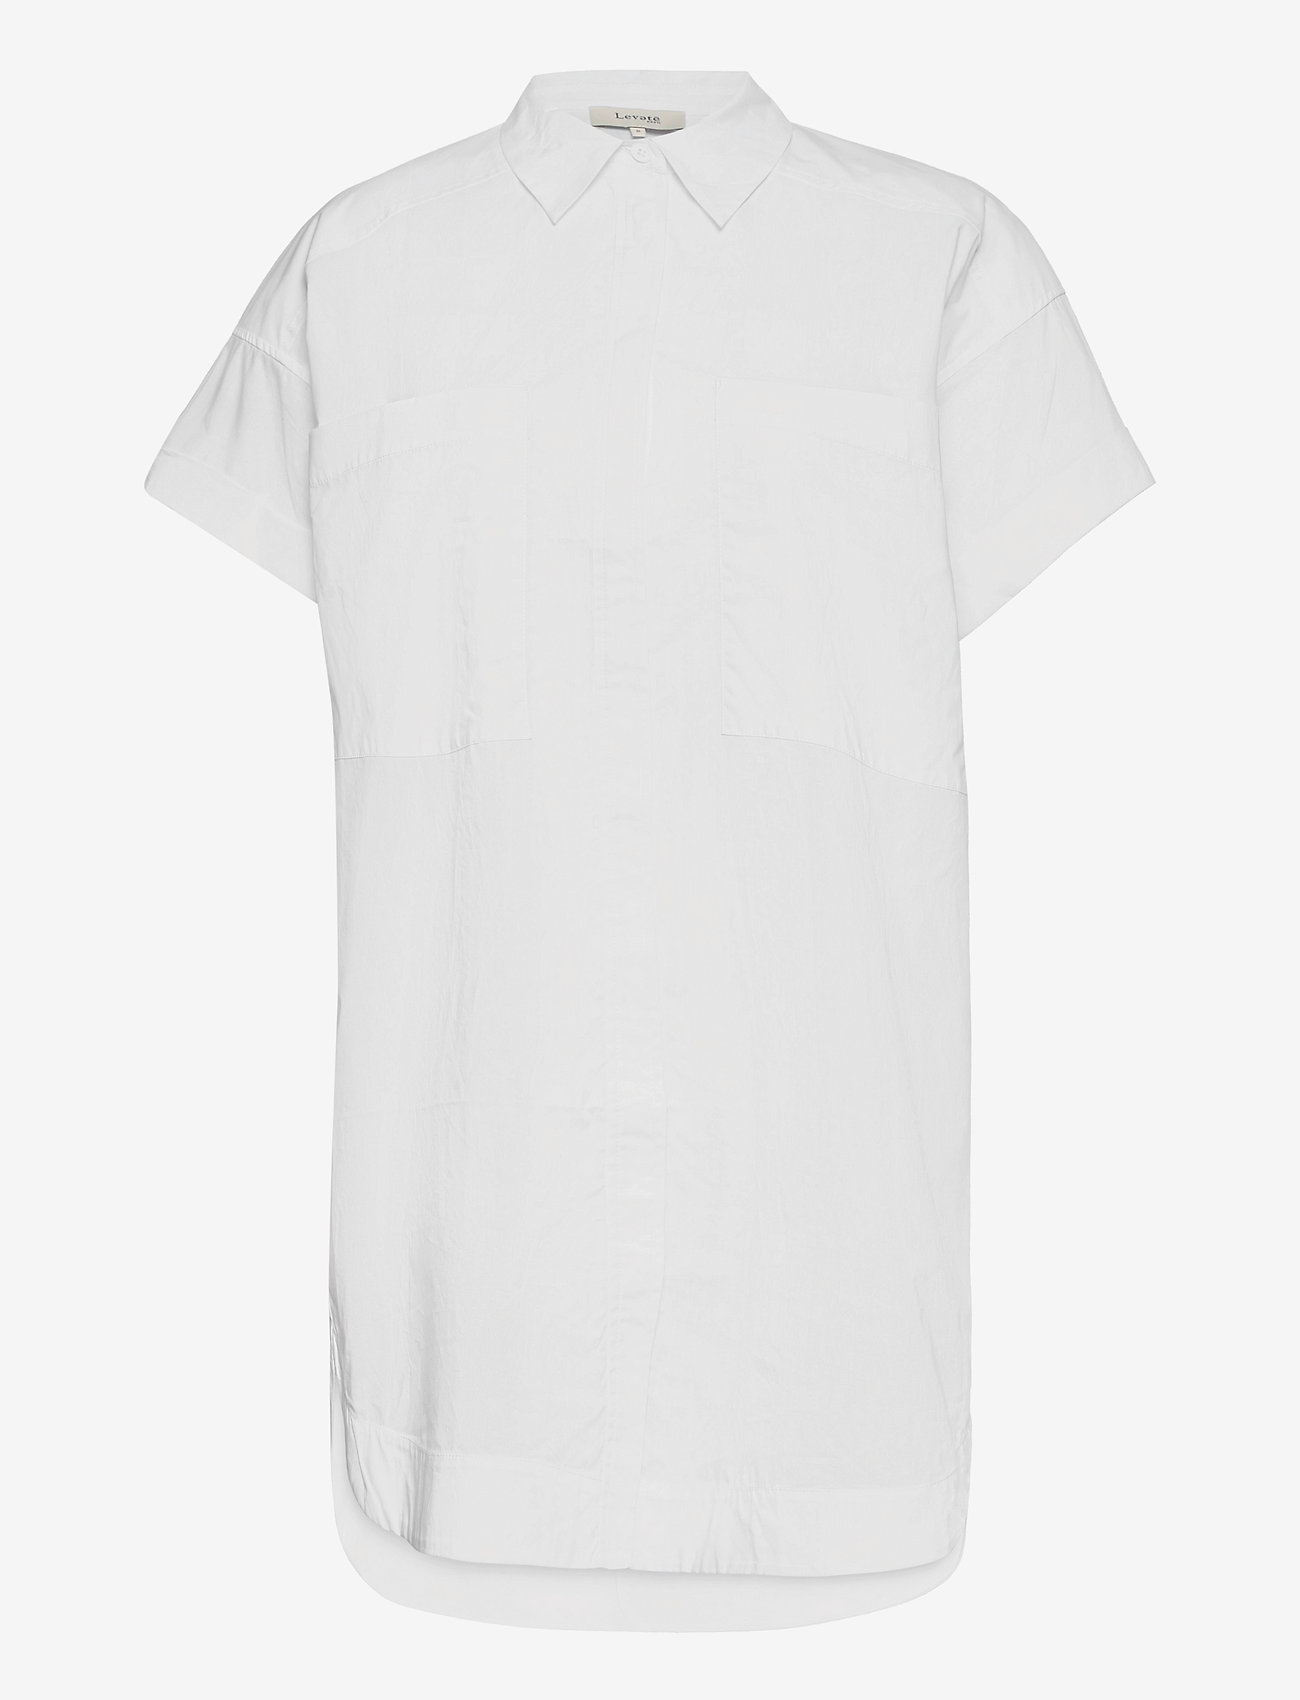 Levete Room - LR-NITA - kurzärmlige hemden - l100 - white - 0